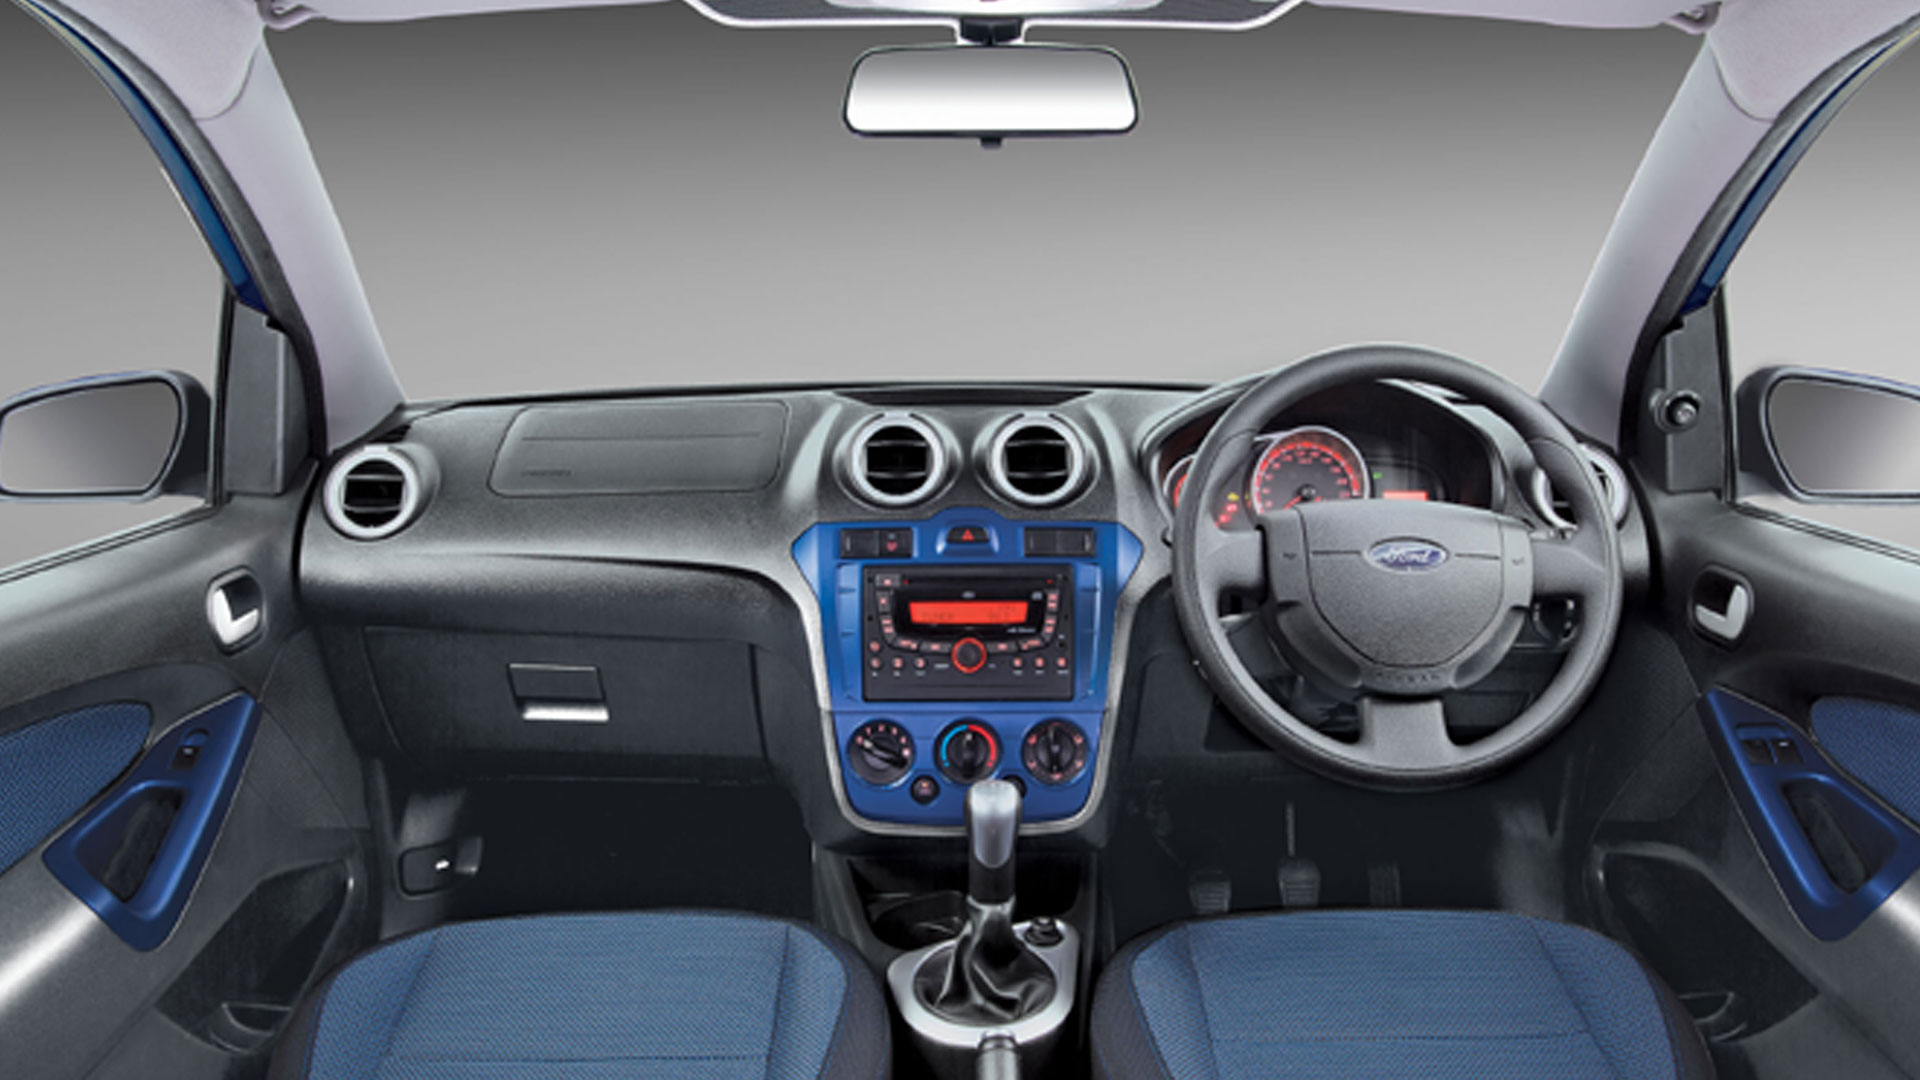 Ford-Figo-2013-1-2-Duratec-LXI-Exterior